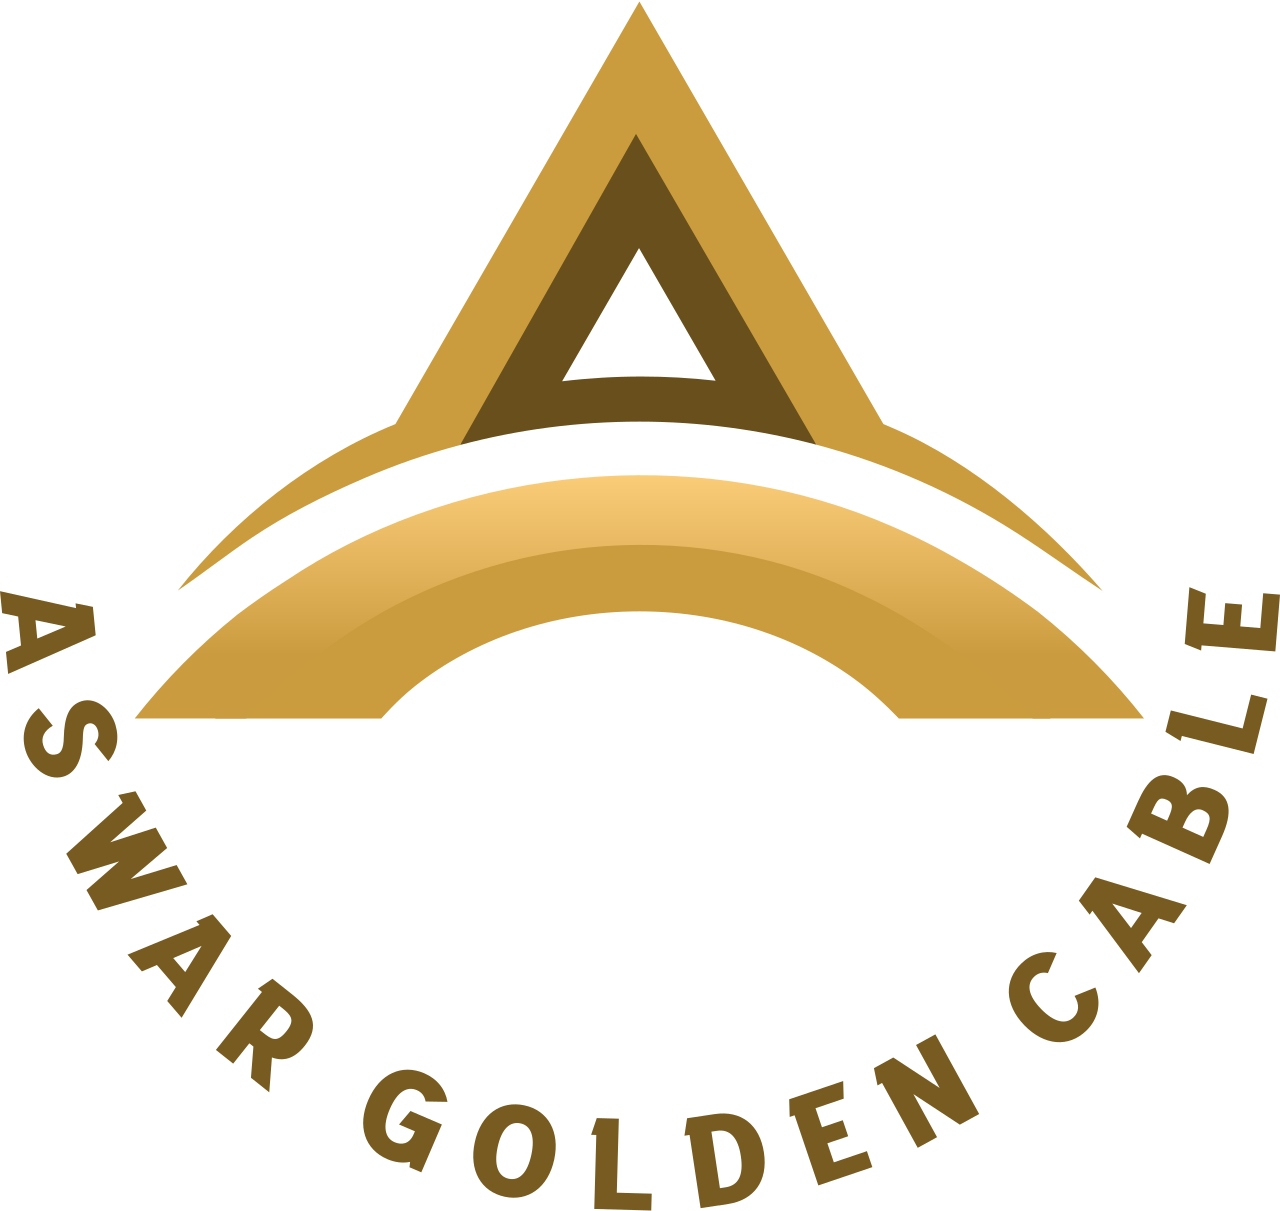 Aswar Golden Cable's logo